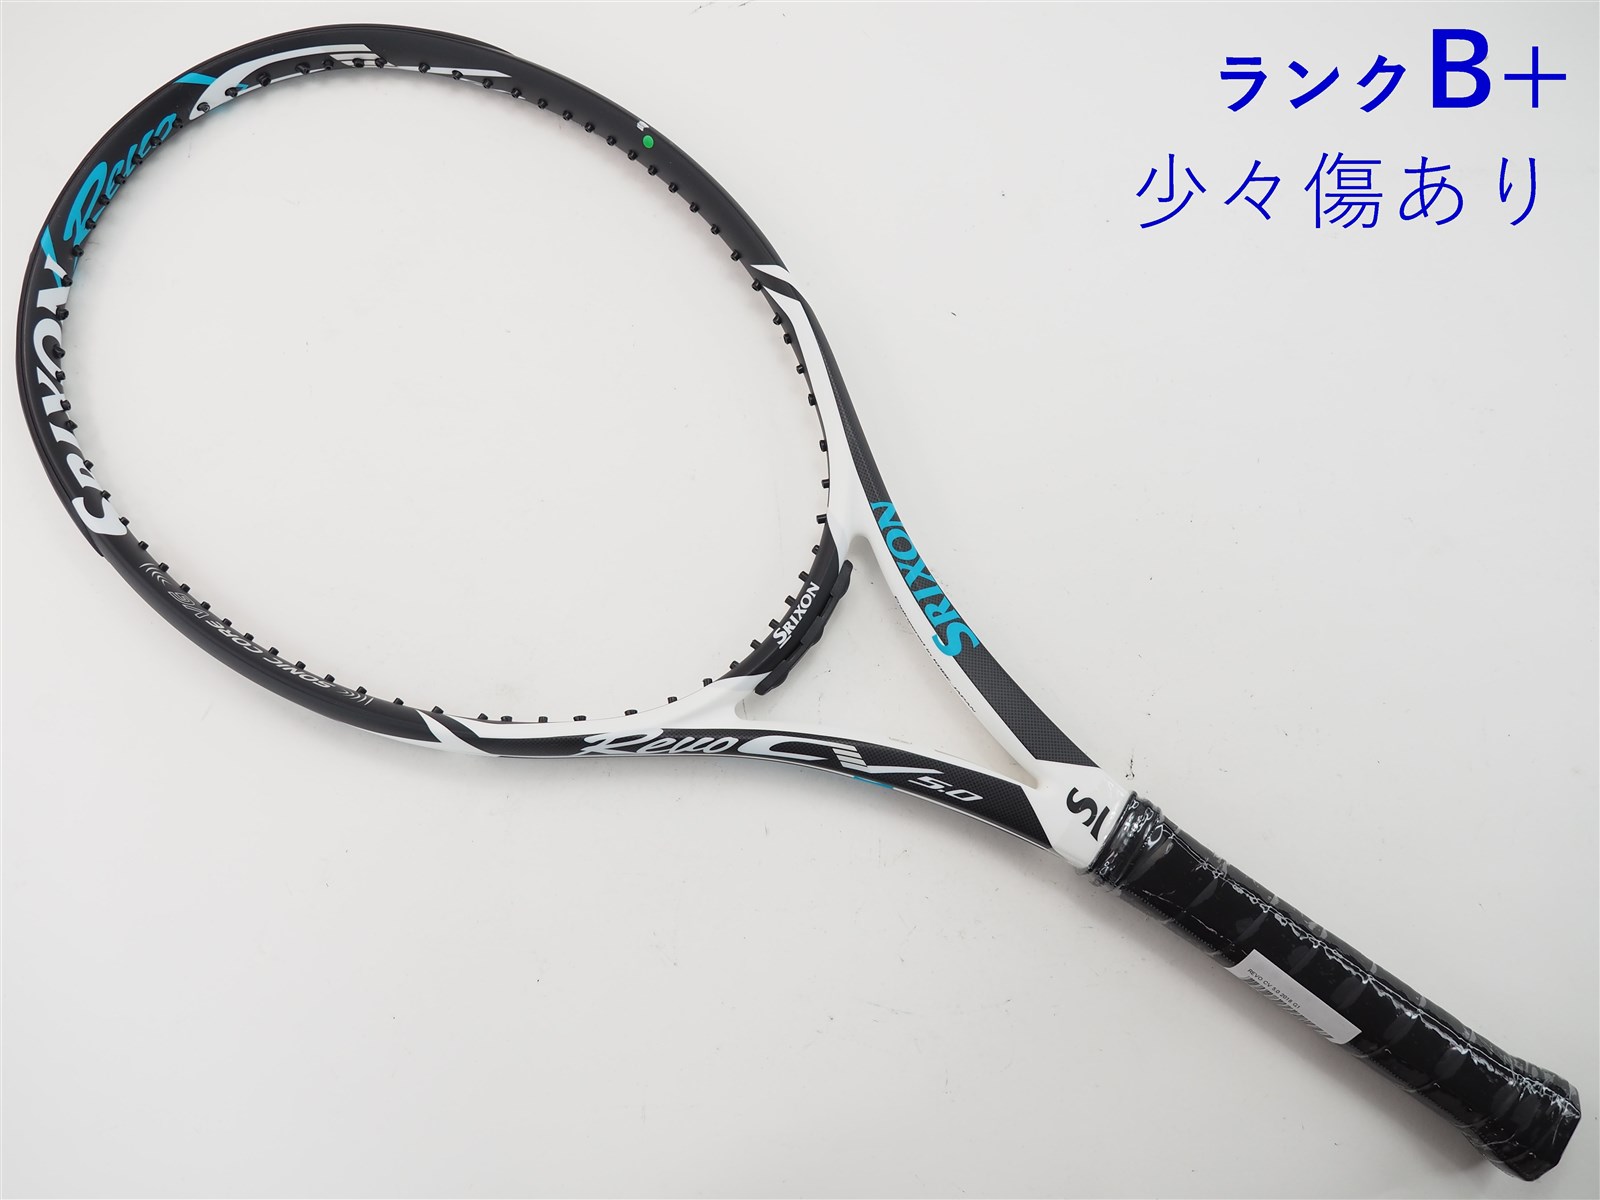 テニスラケット スリクソン レヴォ CV 5.0 2016年モデル (G2)SRIXON REVO CV 5.0 2016